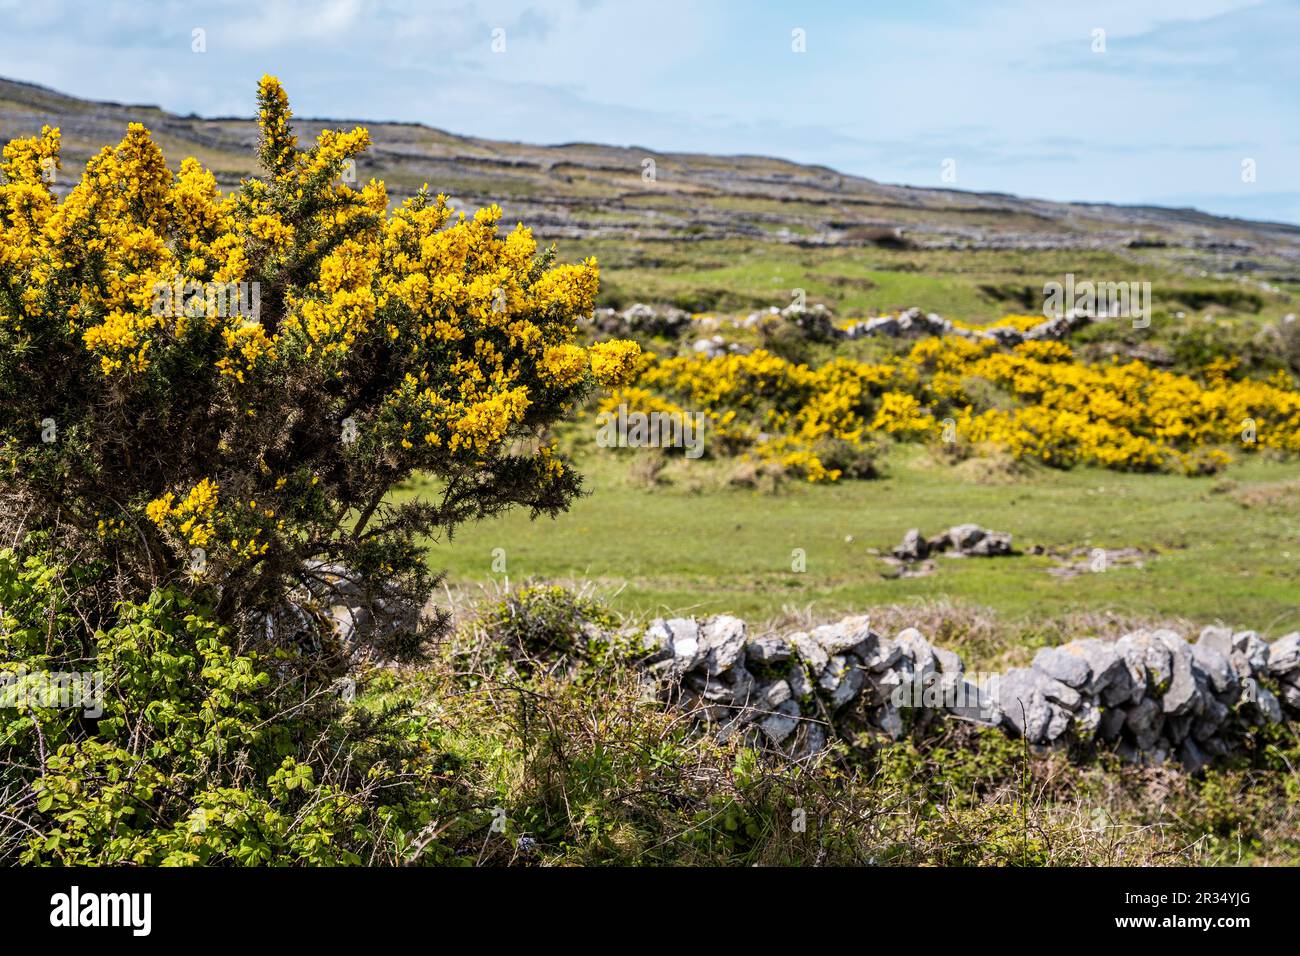 Paysage d'Inis Mór, ou Inishmore, la plus grande des îles d'Aran dans la baie de Galway, au large de la côte ouest de l'Irlande, avec des fleurs jaunes de balai. Banque D'Images